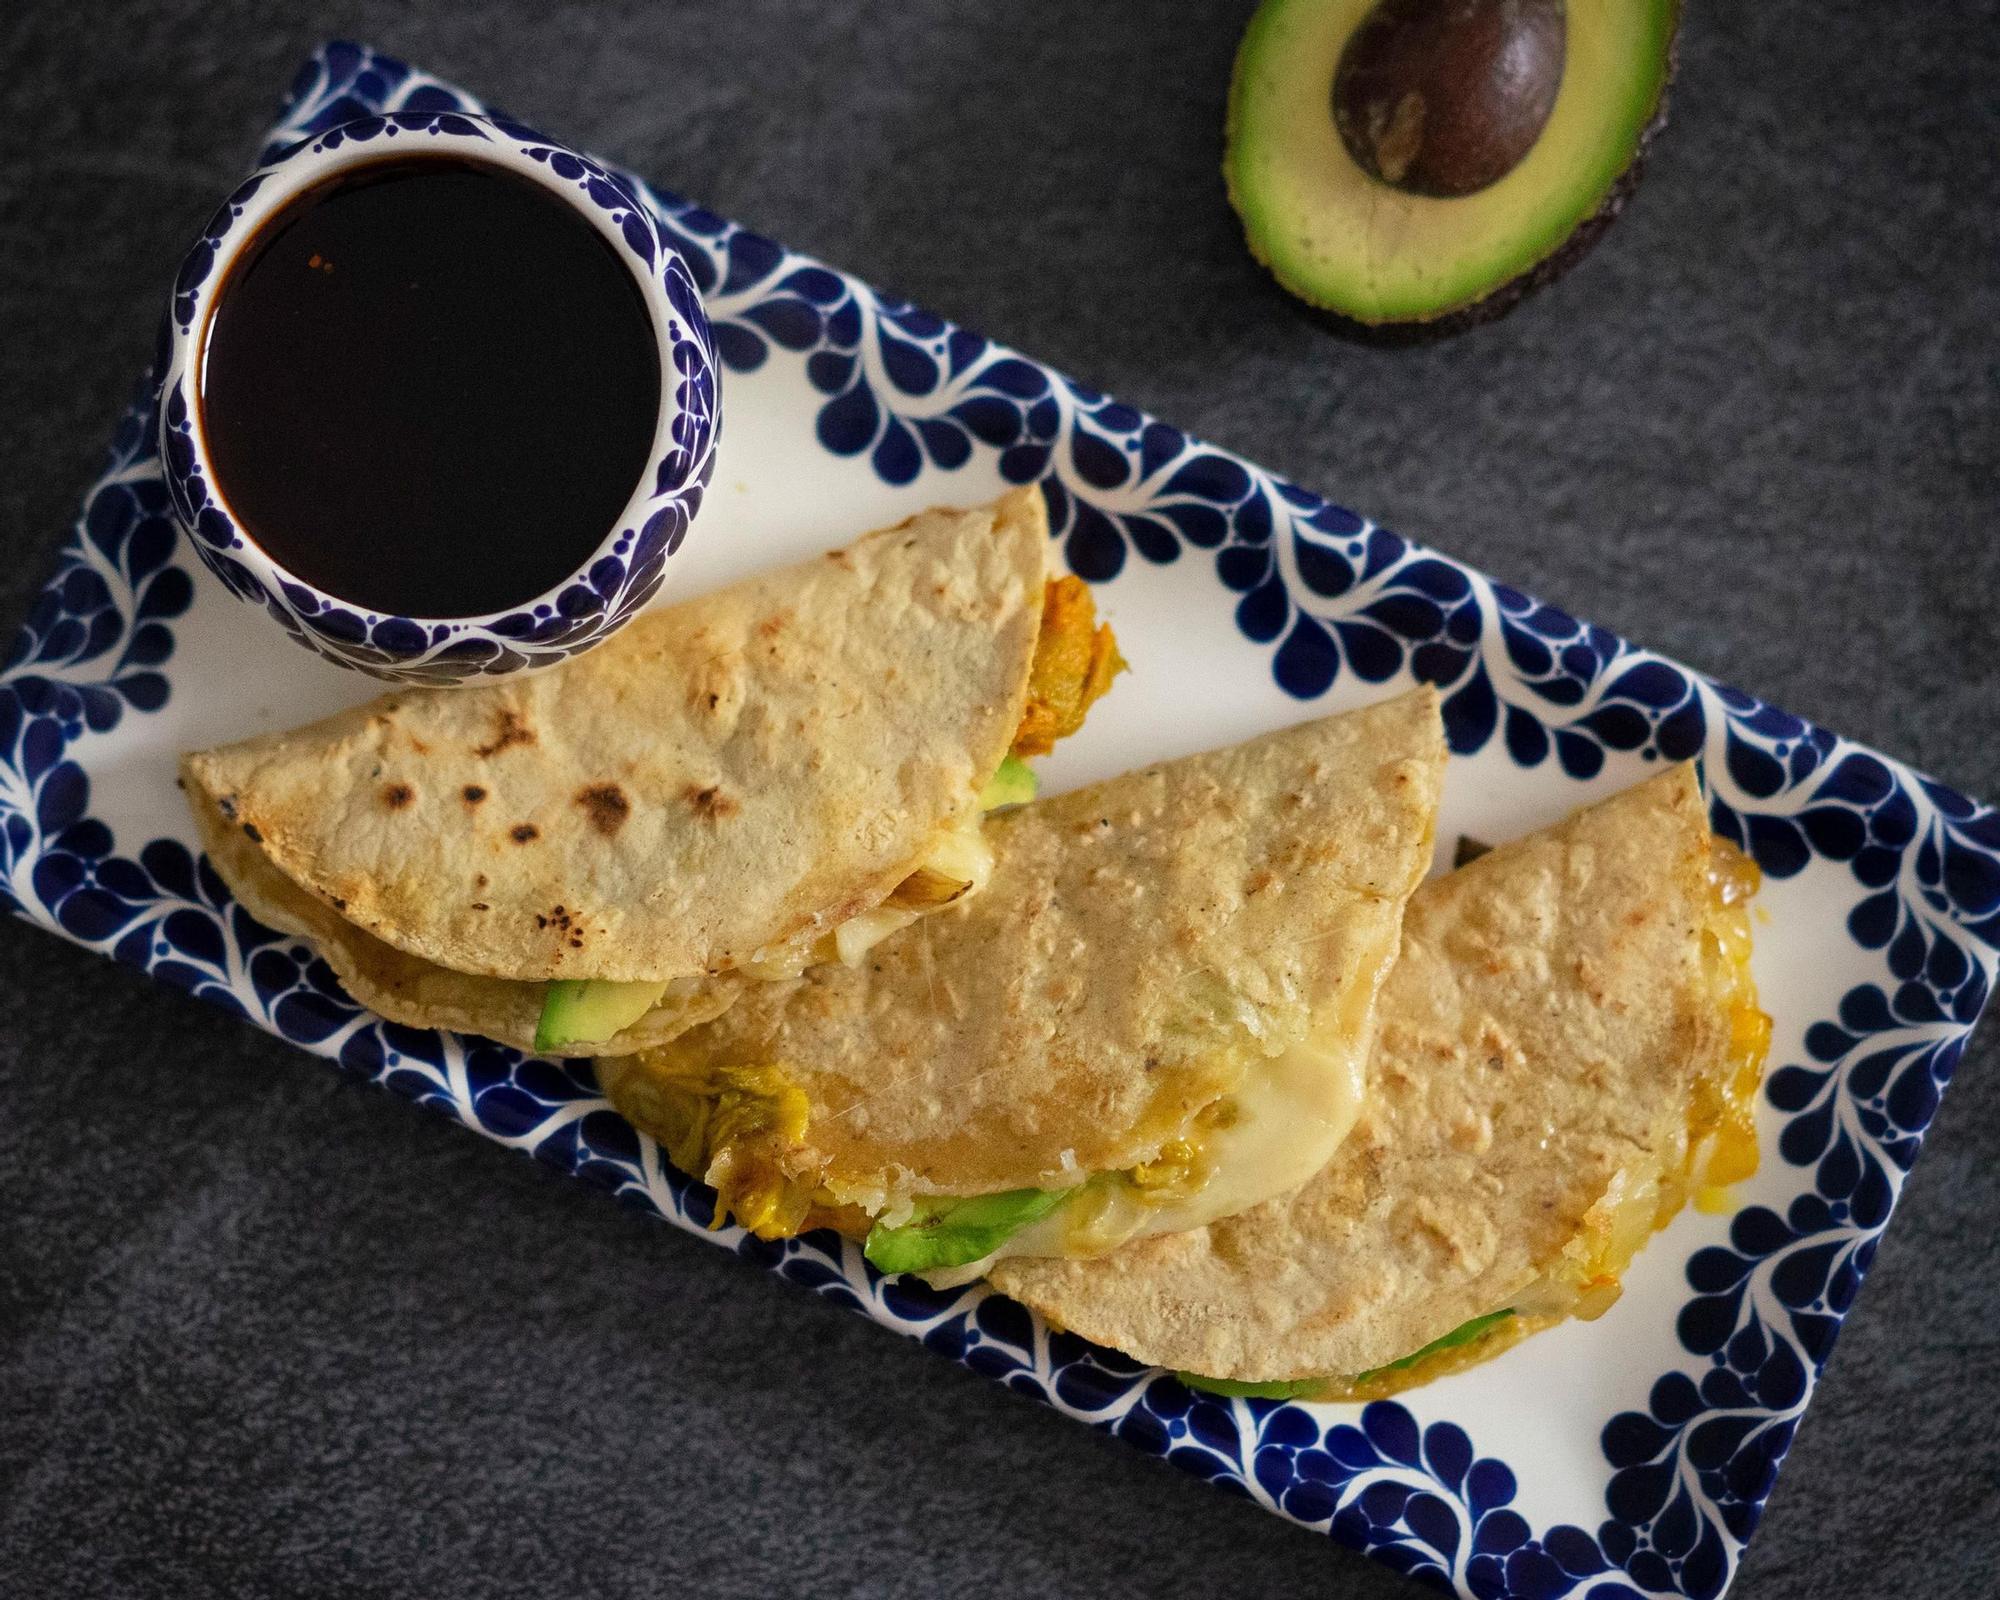 Las quesadillas son un plato estrella en la gastronomía de México